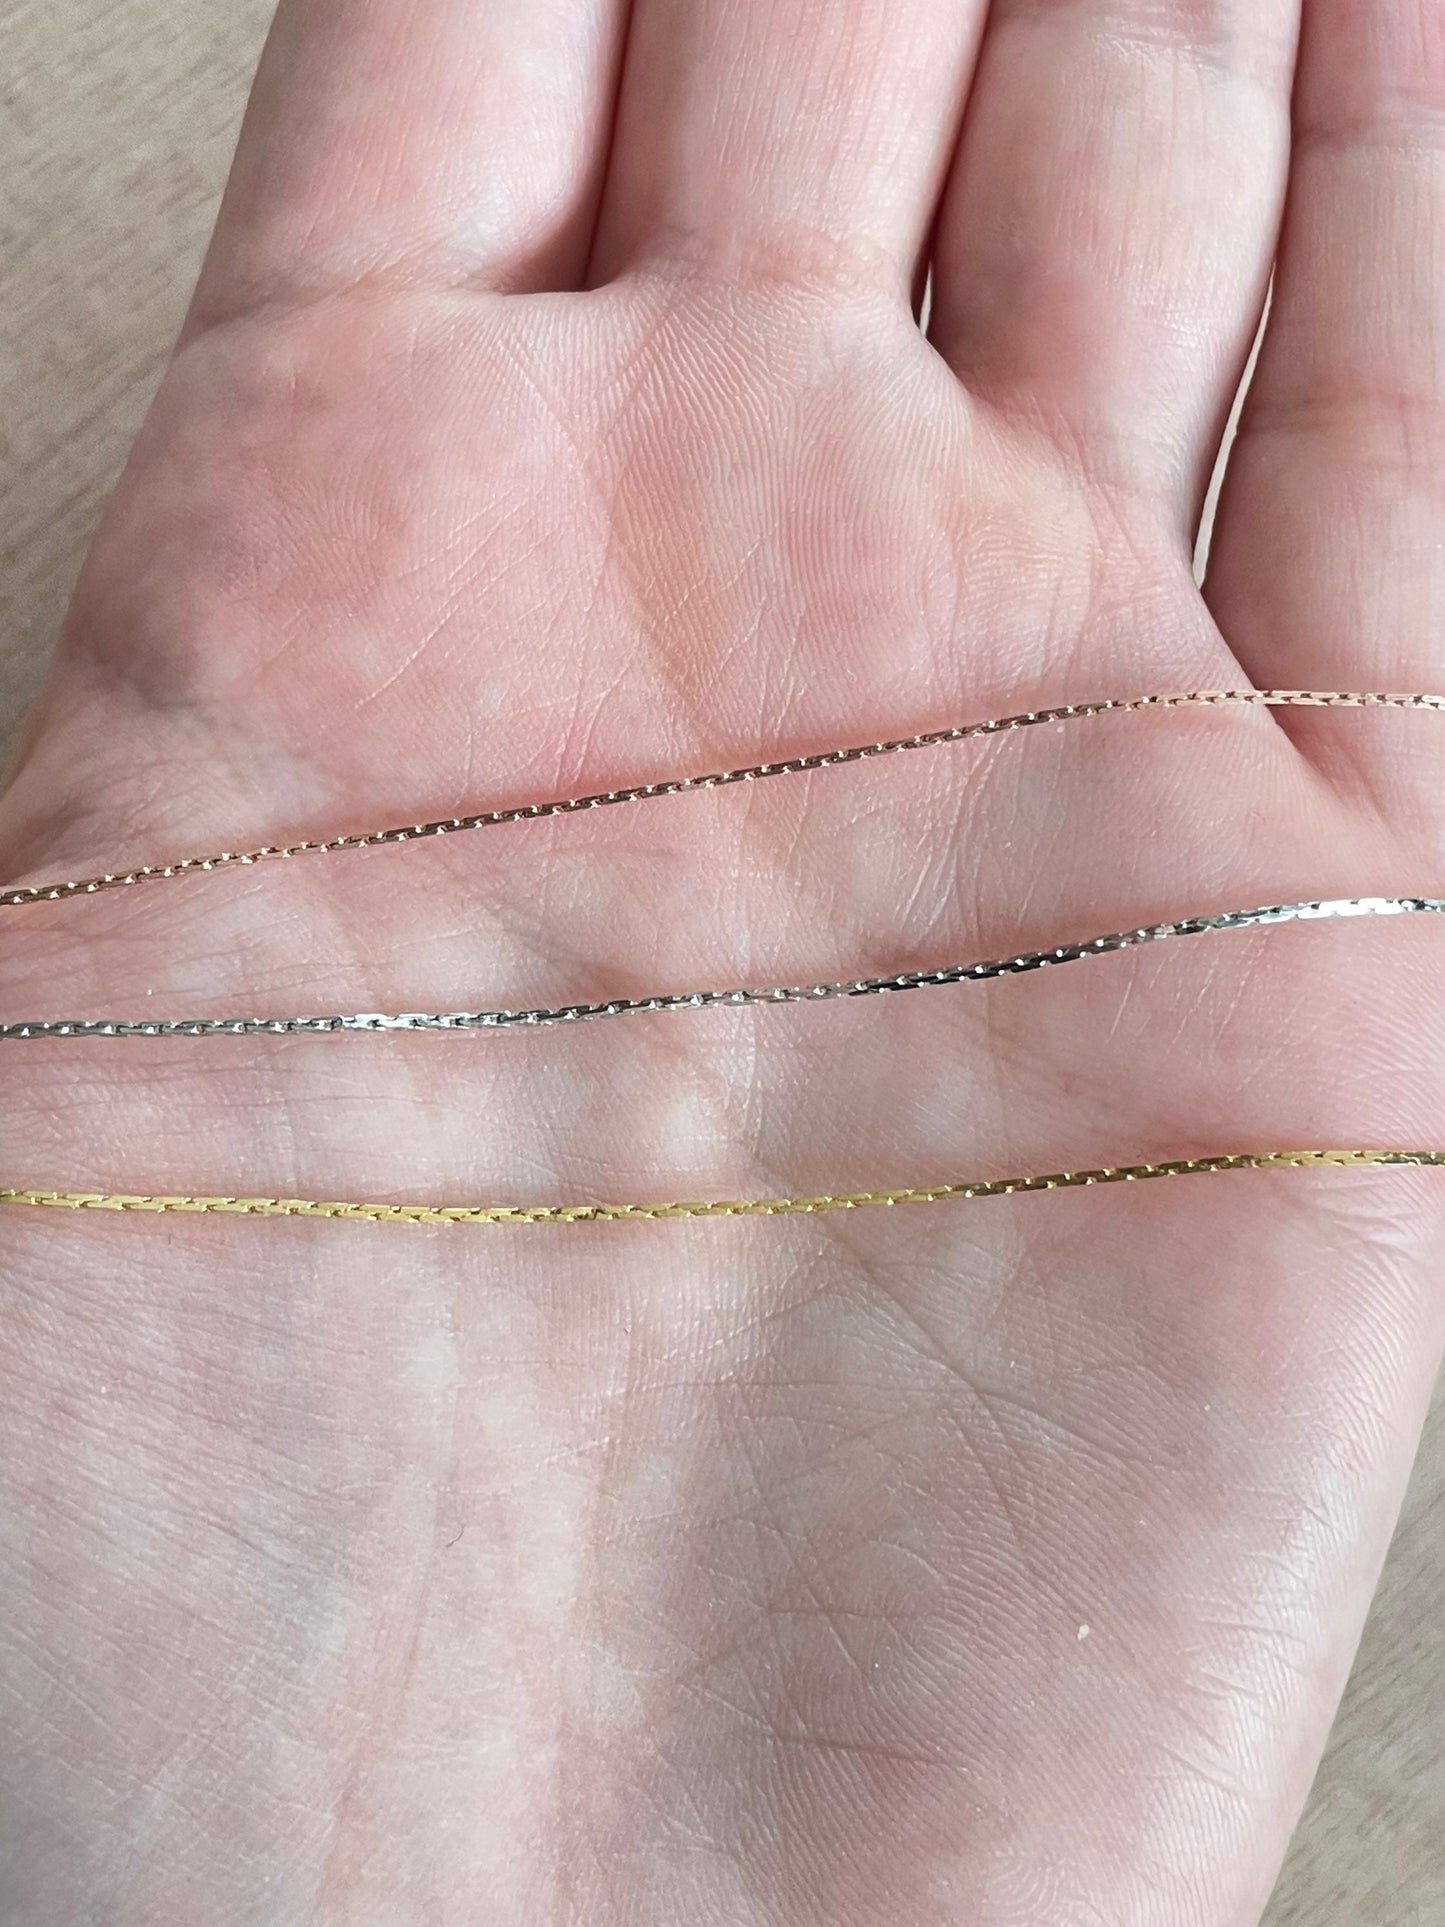 Golden Rutile Quartz Necklace 